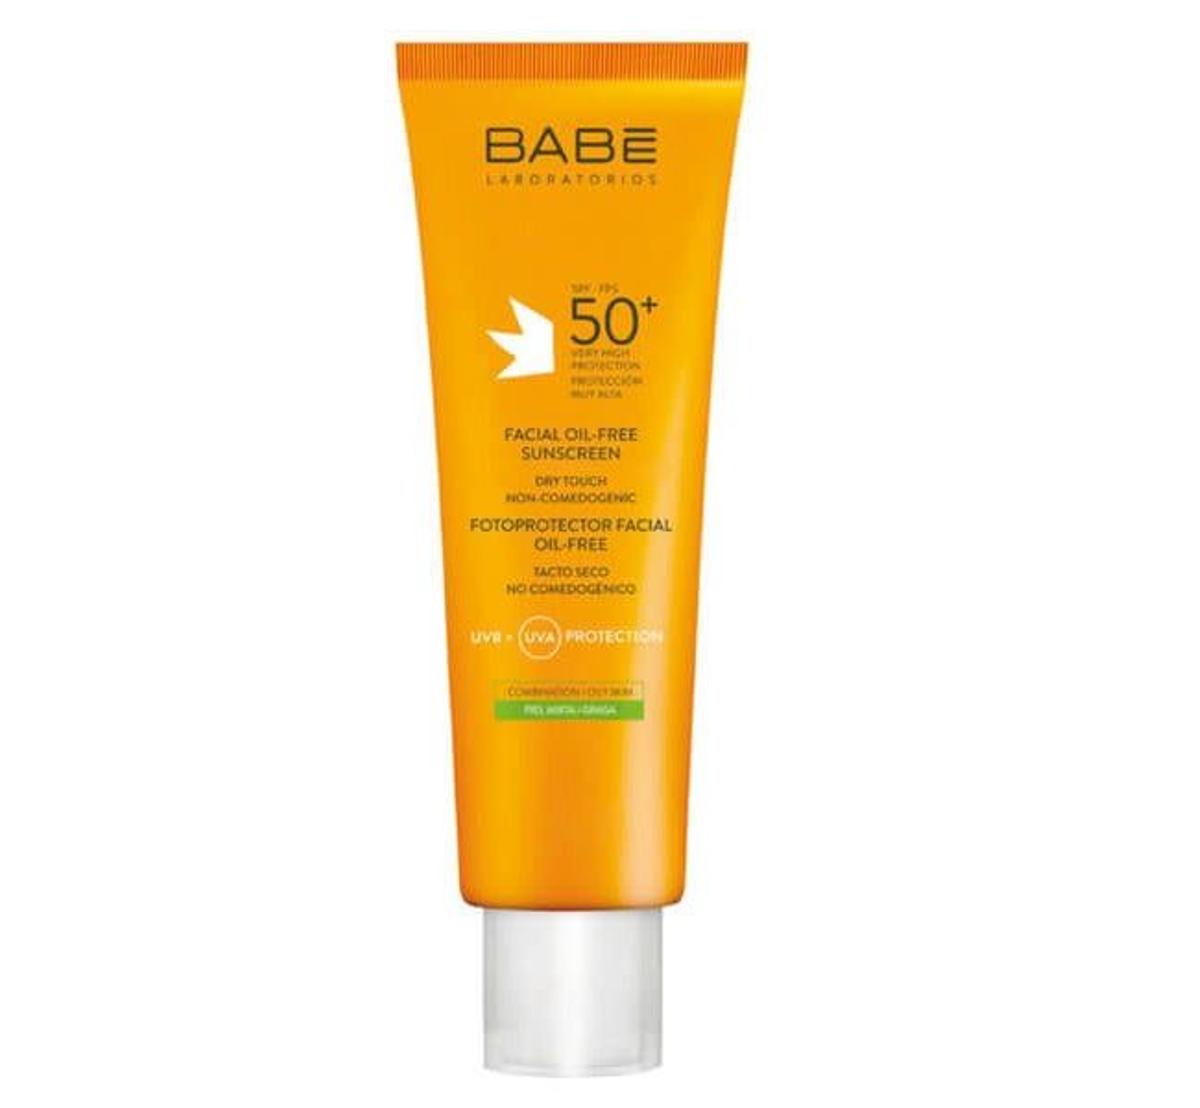 Protección solar para piel grasa con tendencia al acné con acabado mate